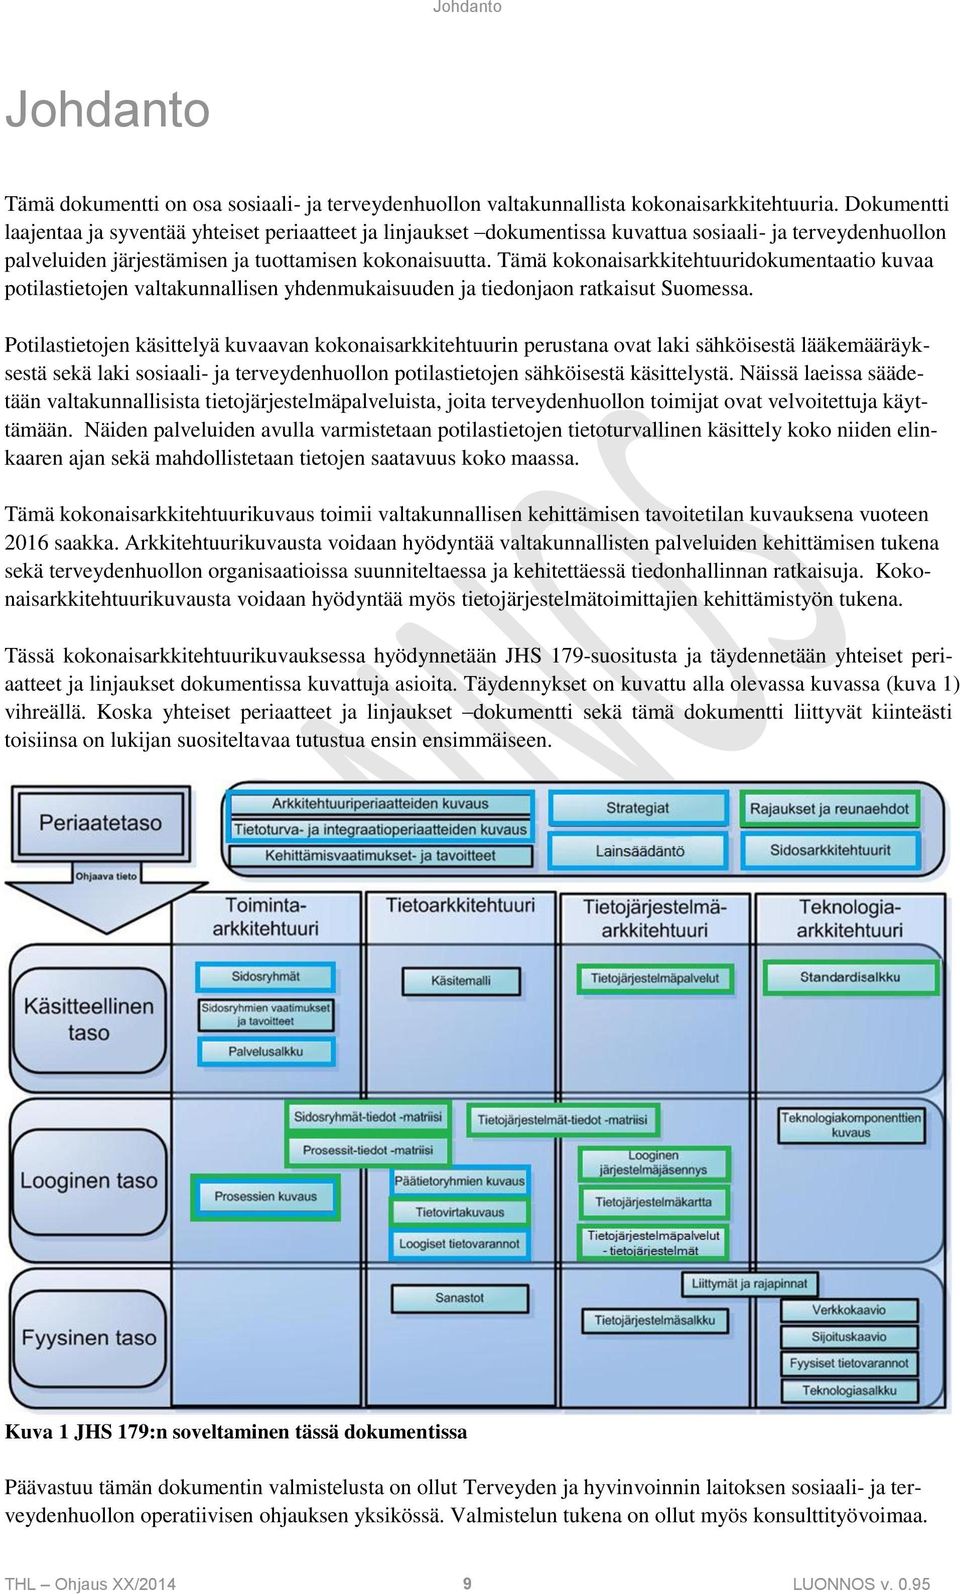 Tämä kokonaisarkkitehtuuridokumentaatio kuvaa potilastietojen valtakunnallisen yhdenmukaisuuden ja tiedonjaon ratkaisut Suomessa.